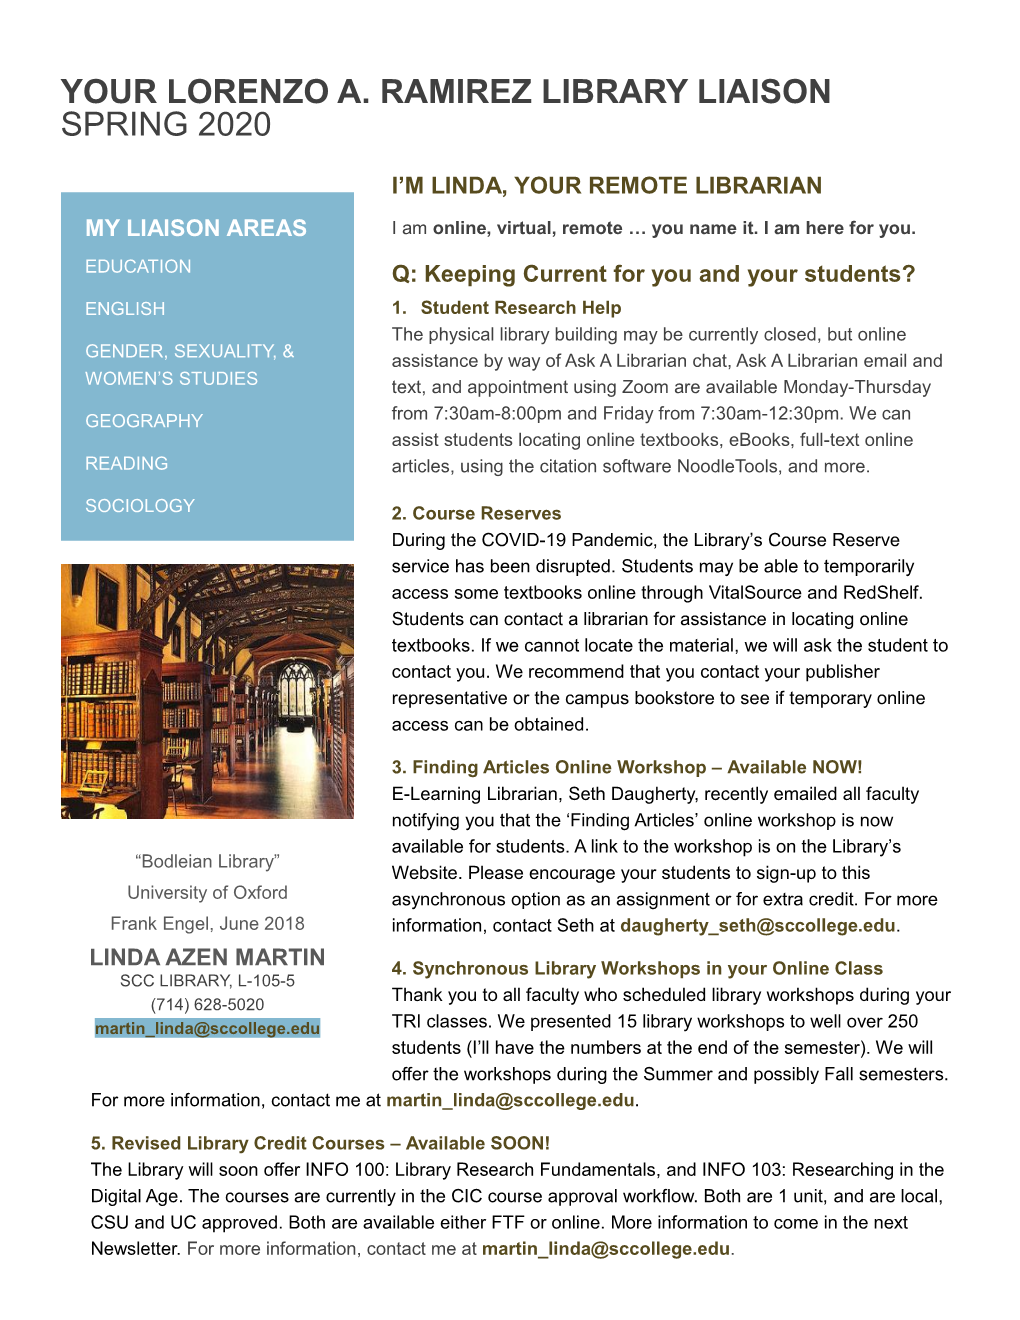 Your Lorenzo A. Ramirez Library Liaison Spring 2020